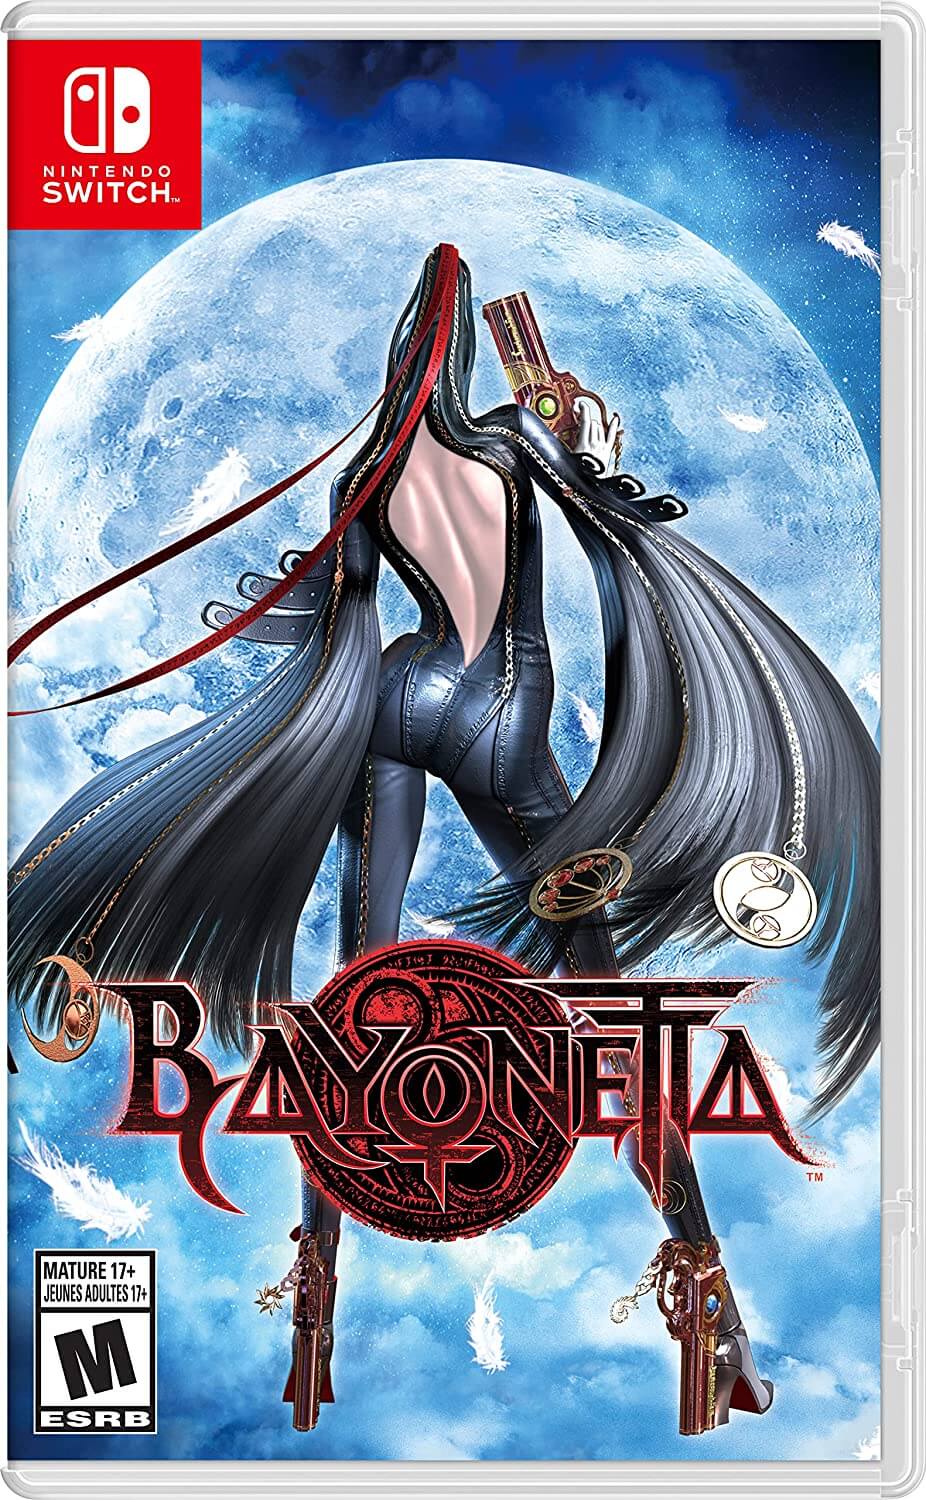 Bayonetta 1 Shared Screen Boxart